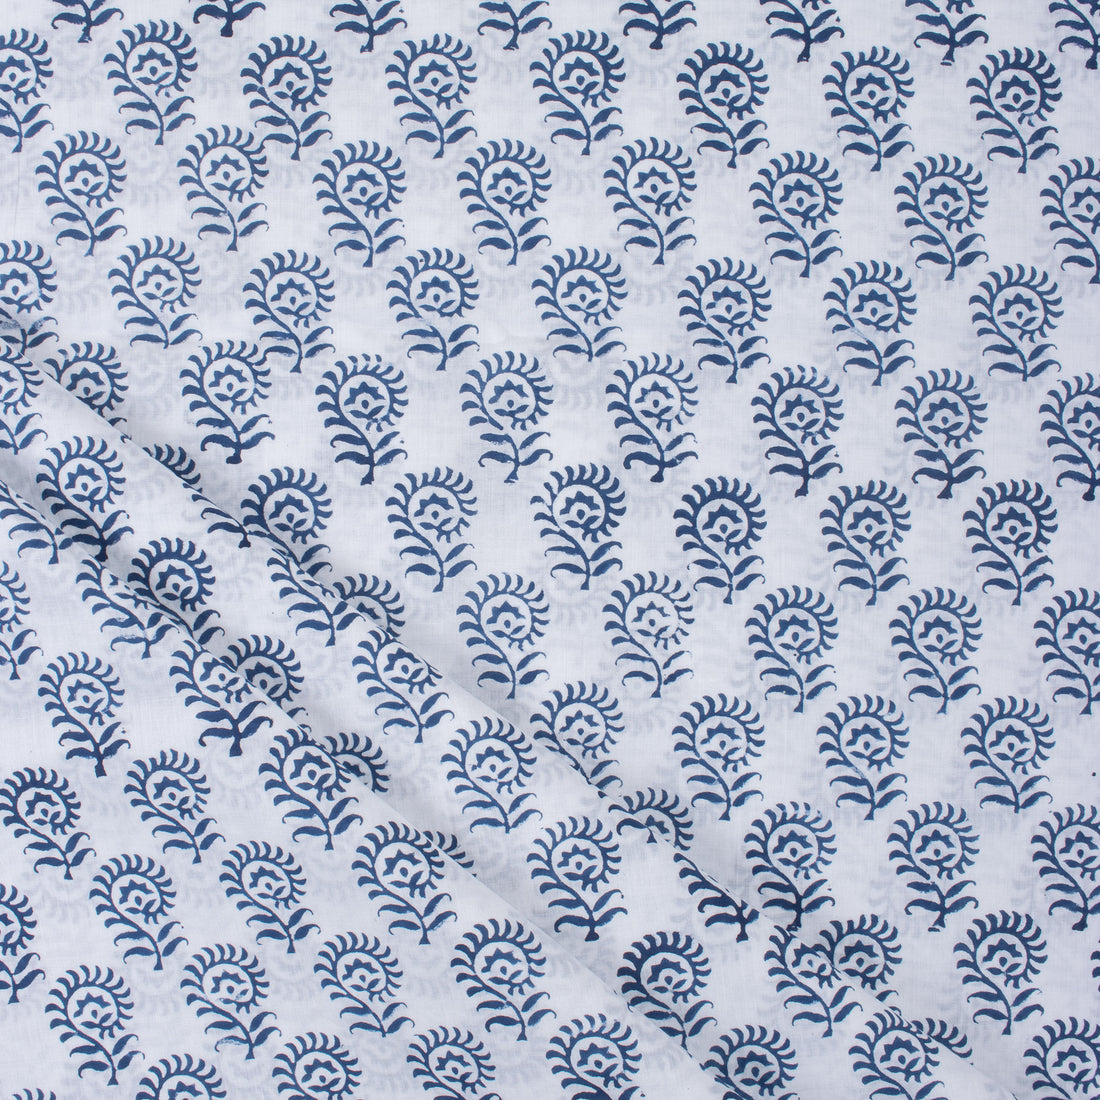 Cotton Block Print Fabric